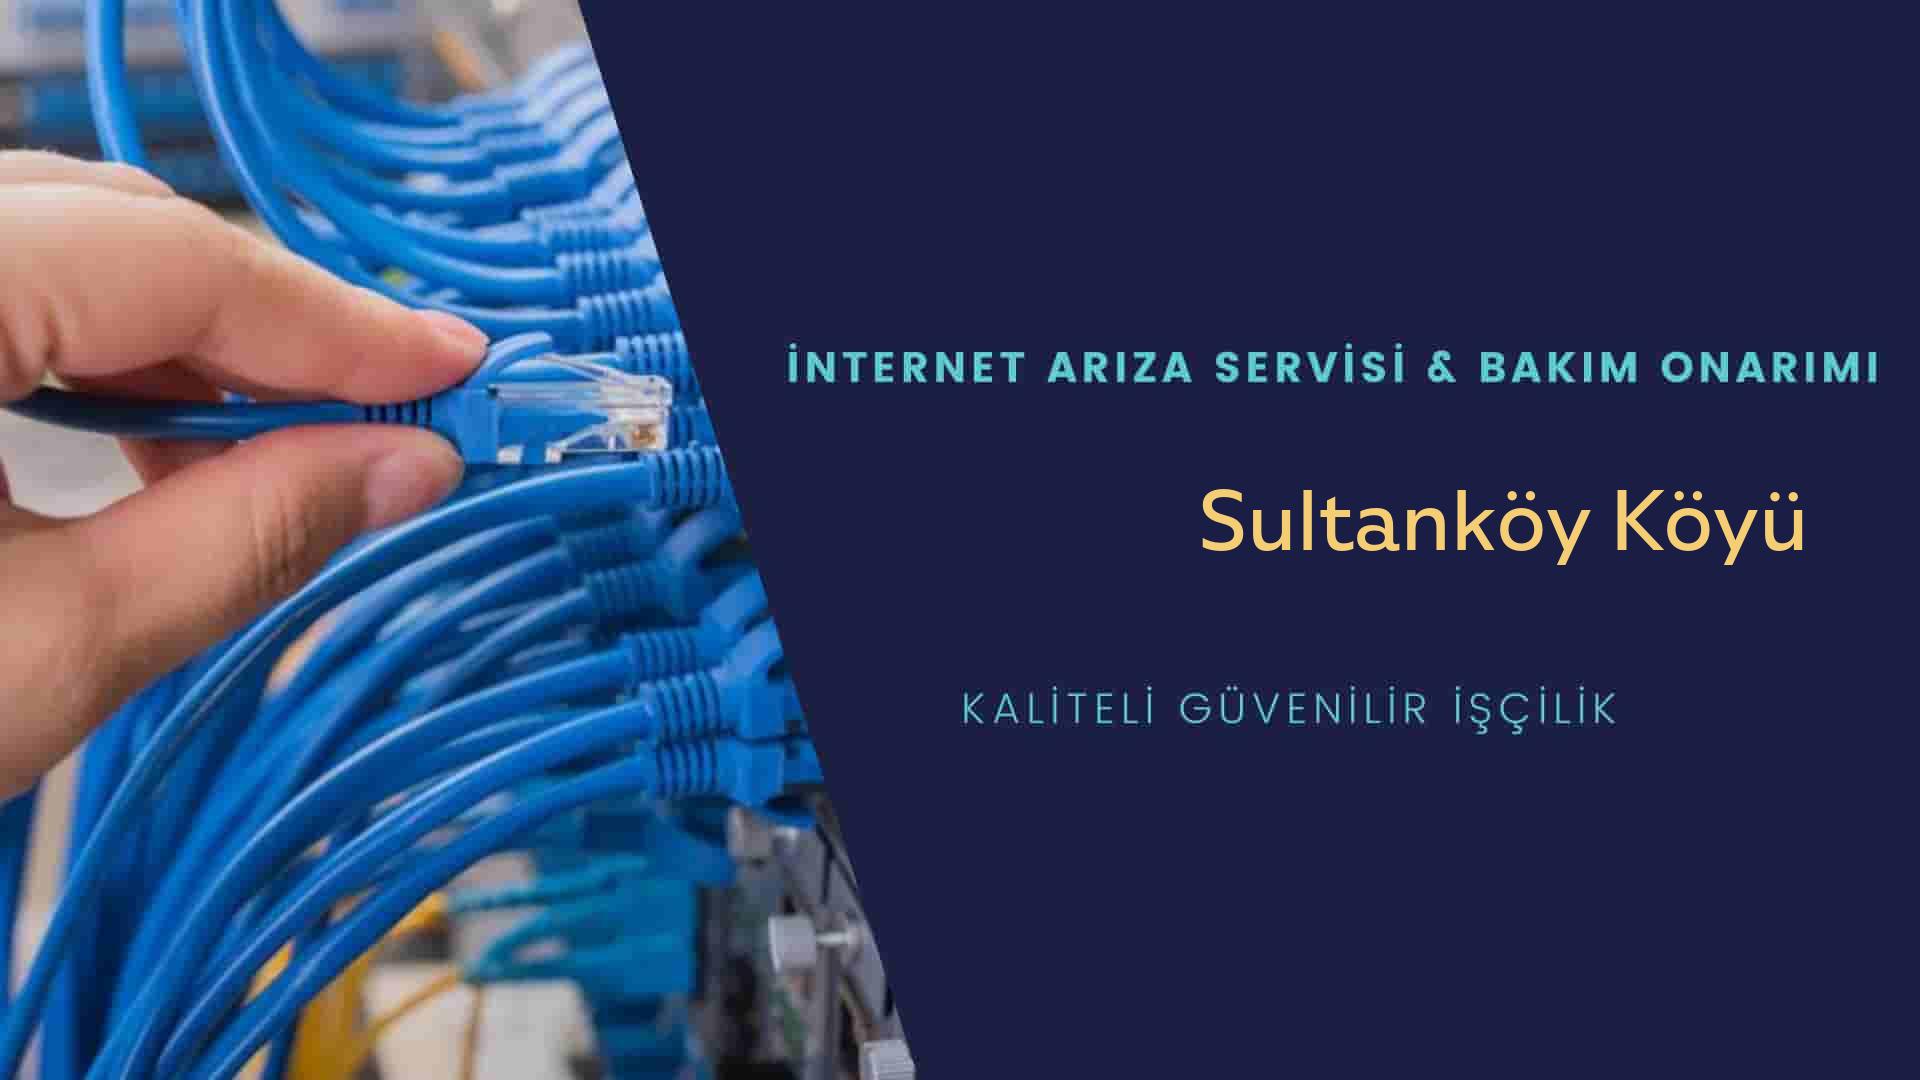 Sultanköy Köyü internet kablosu çekimi yapan yerler veya elektrikçiler mi? arıyorsunuz doğru yerdesiniz o zaman sizlere 7/24 yardımcı olacak profesyonel ustalarımız bir telefon kadar yakındır size.